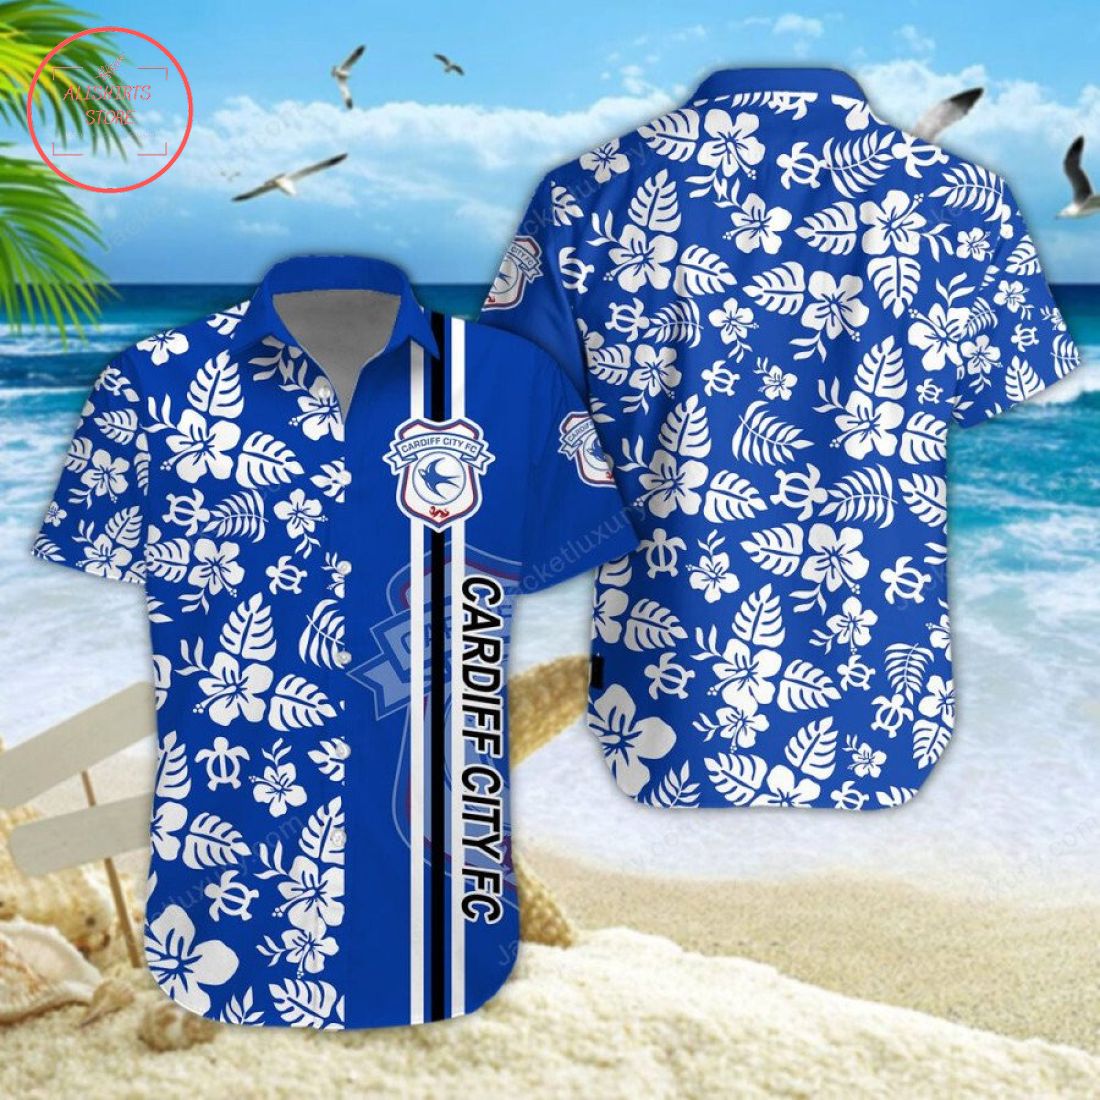 Cardiff City F.C Aloha Hawaiian Shirt and Beach Shorts